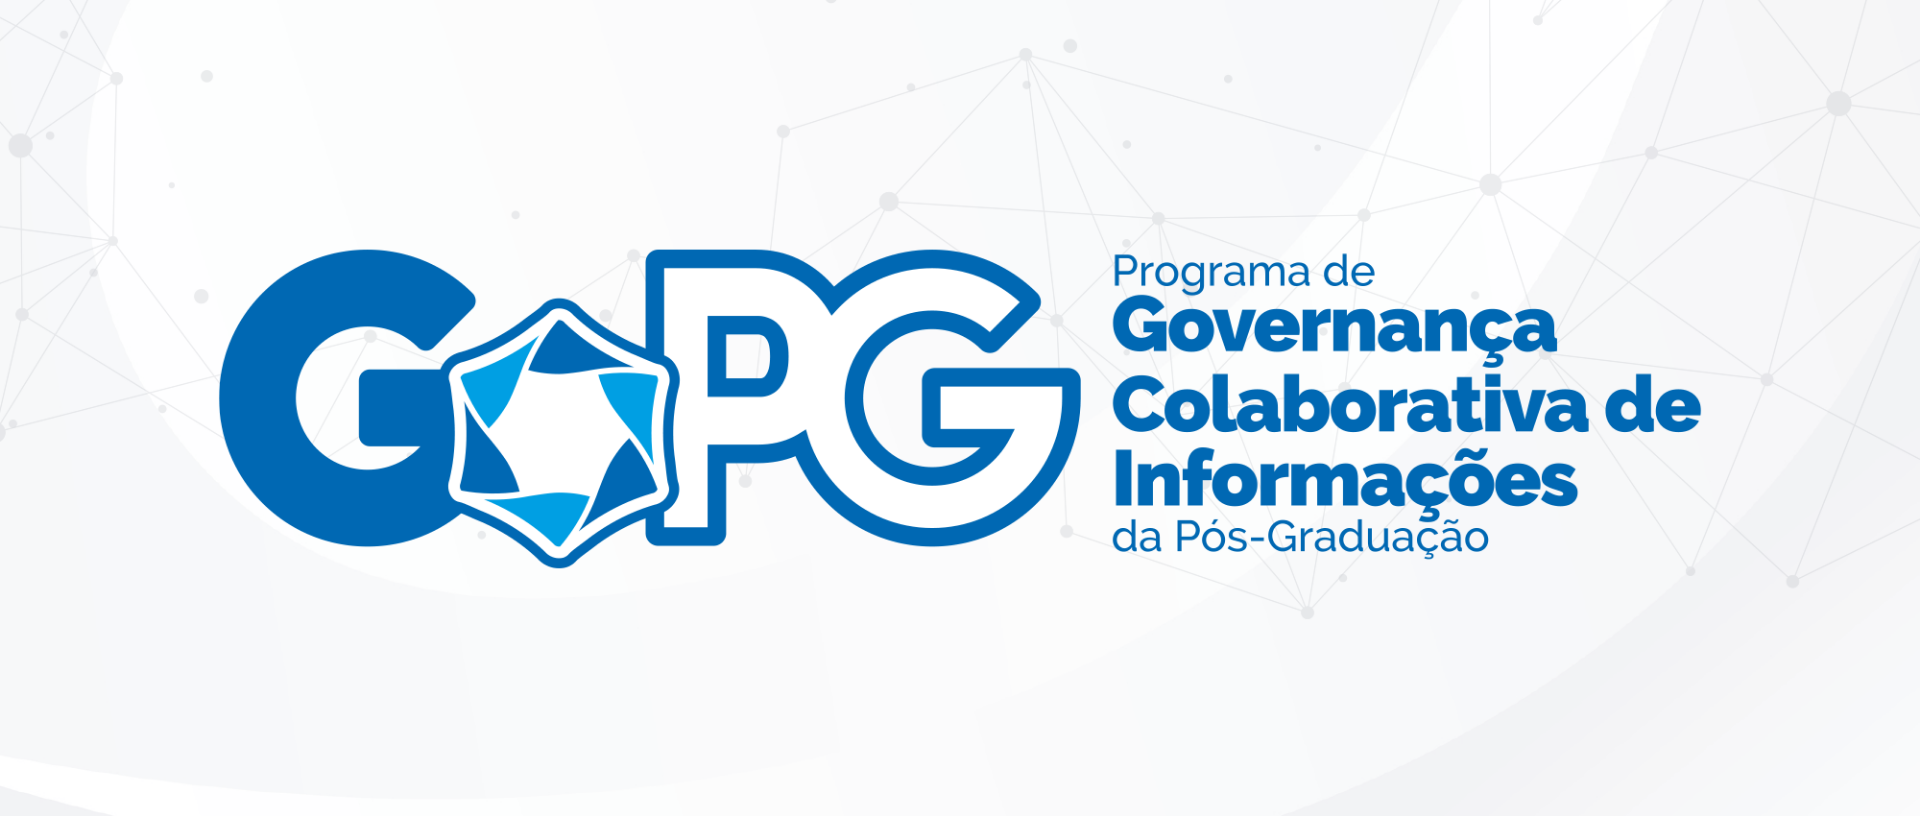 Programa de Governança Colaborativa de Informações da Pós-Graduação